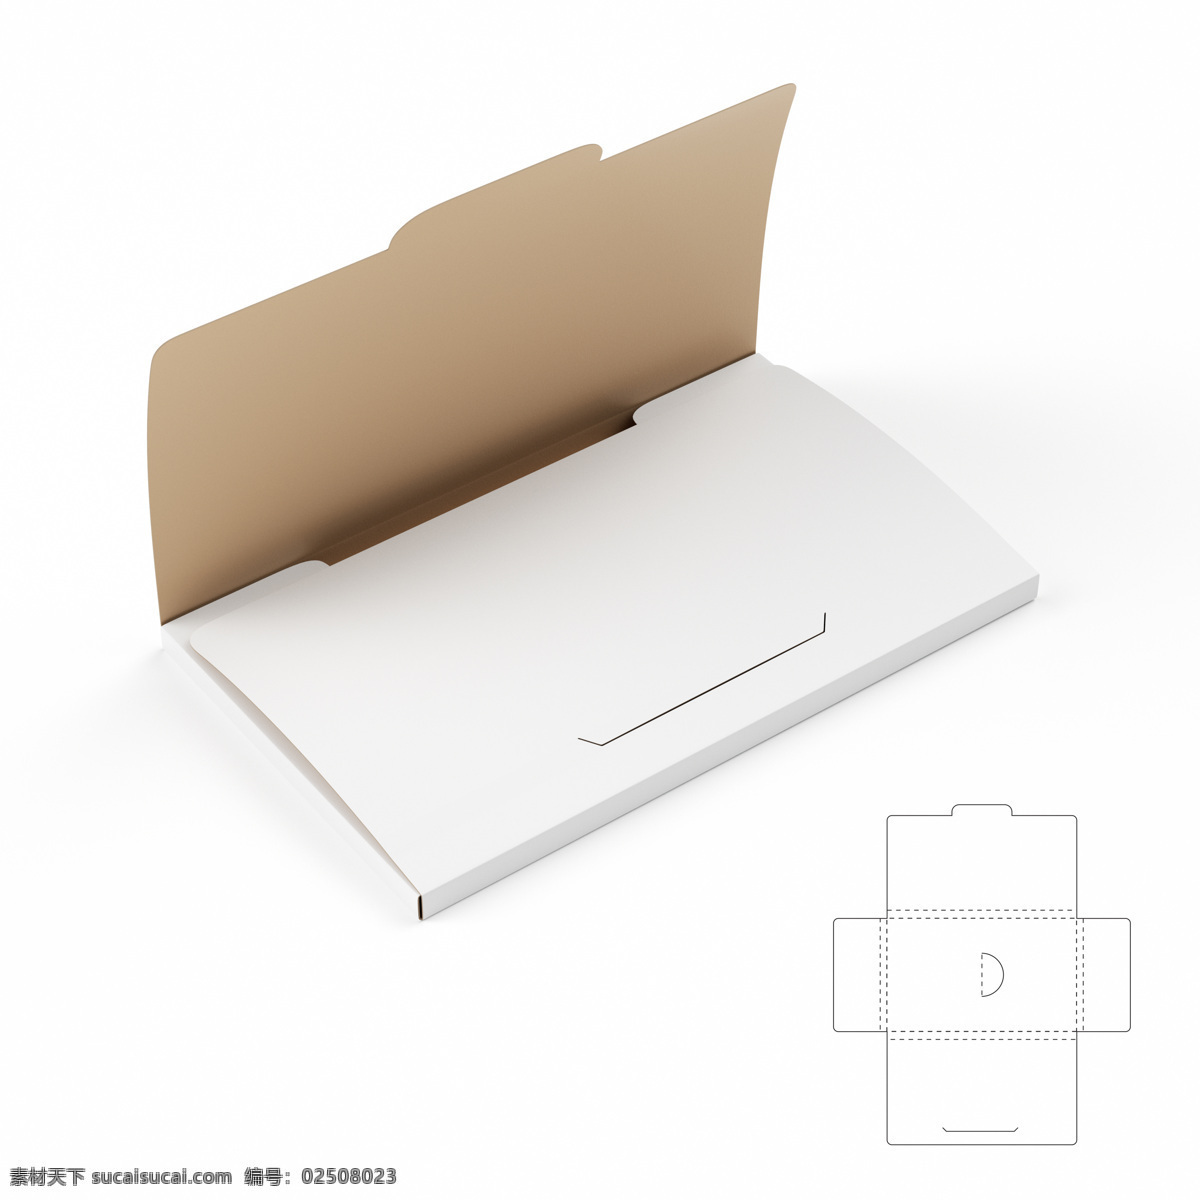 产品 盒子 盒子平面效果 包装盒模板 包装盒设计 创意包装设计 包装盒展开图 包装效果图 包装盒子 包装设计 其他类别 生活百科